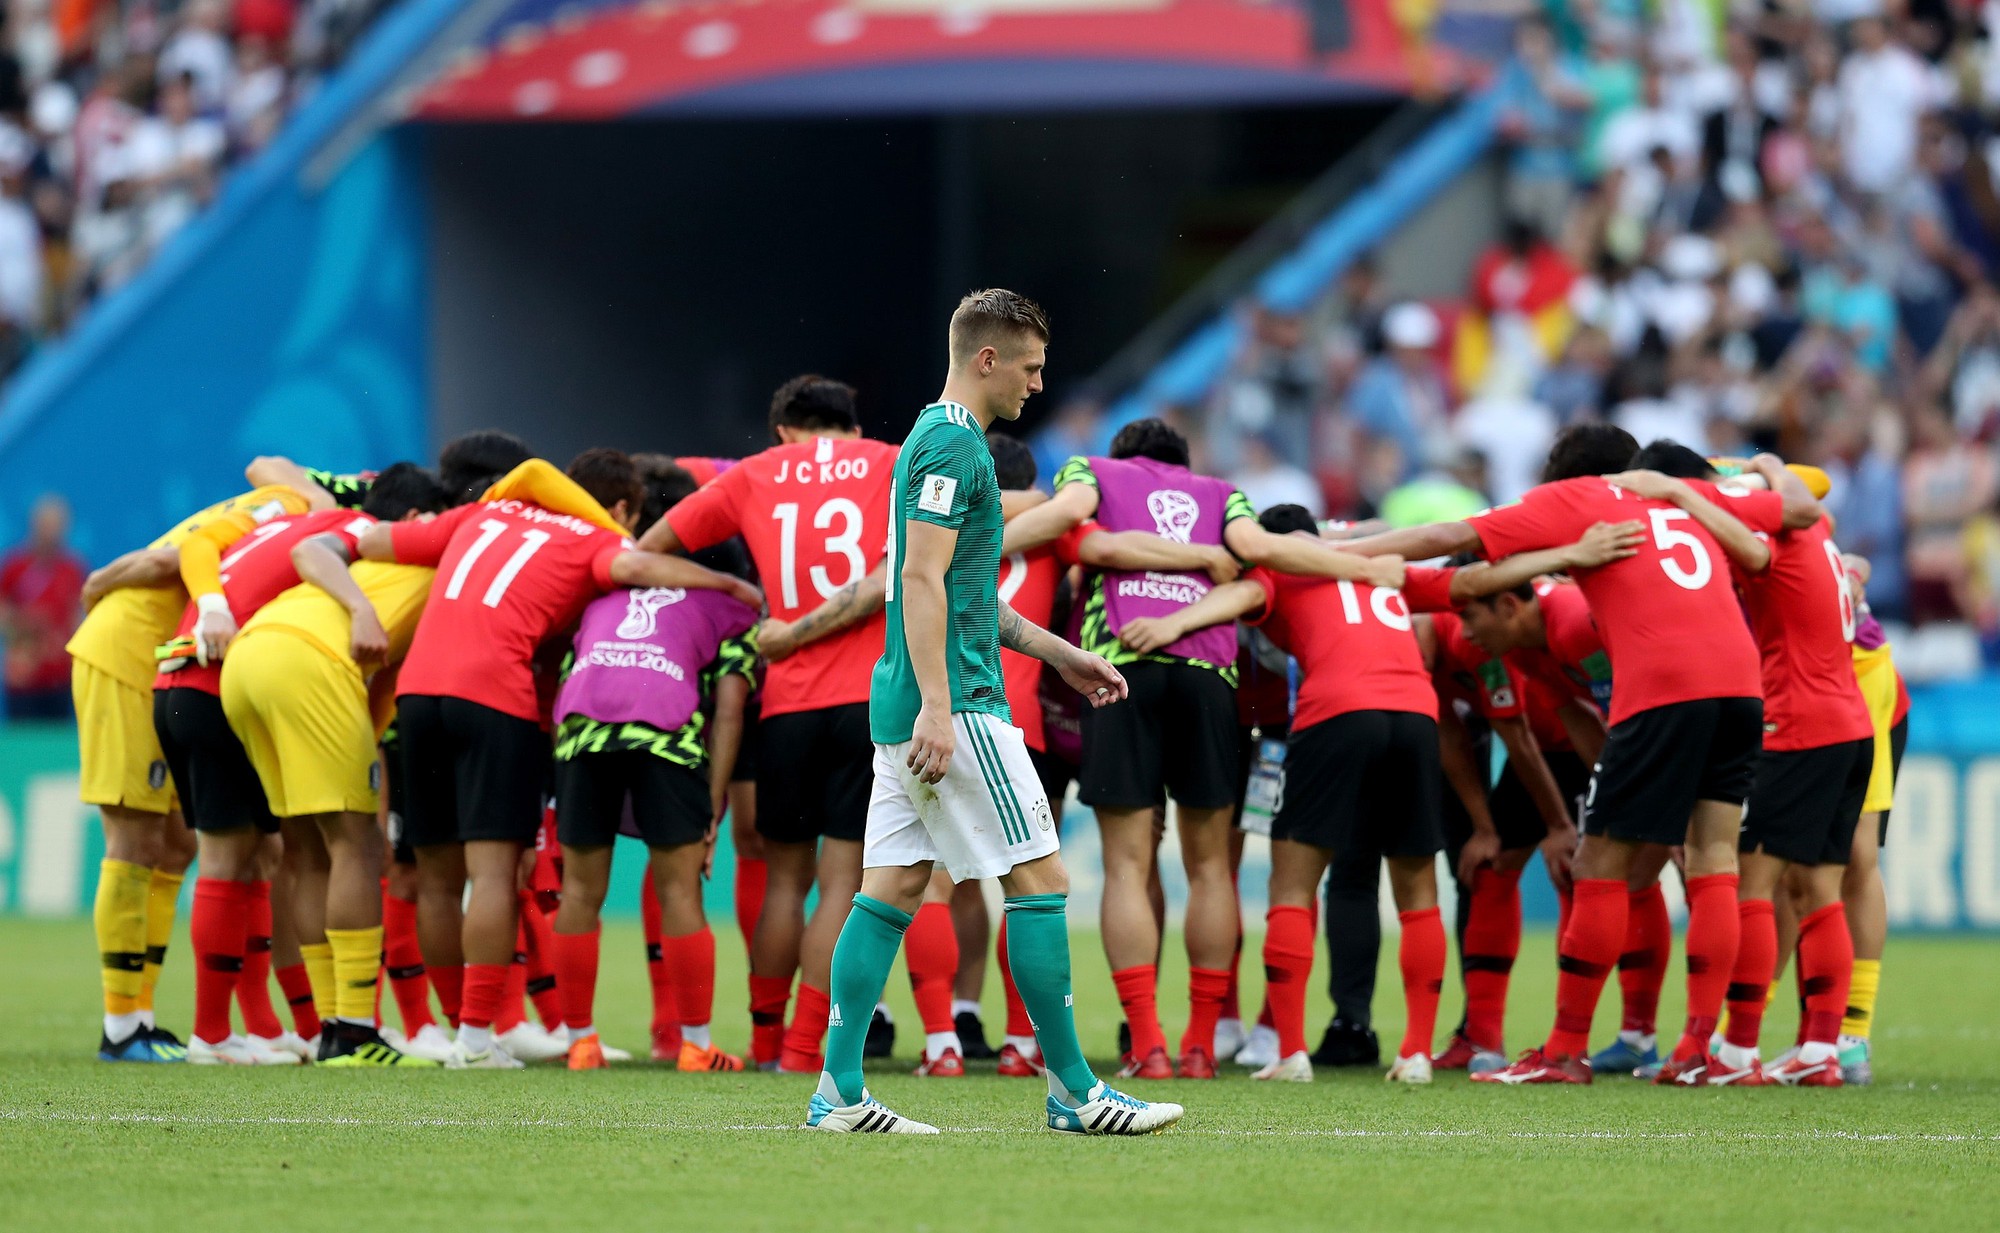 Cầu thủ Hàn Quốc bật khóc, vỡ òa sau chiến tích loại nhà vô địch Đức - Ảnh 7.